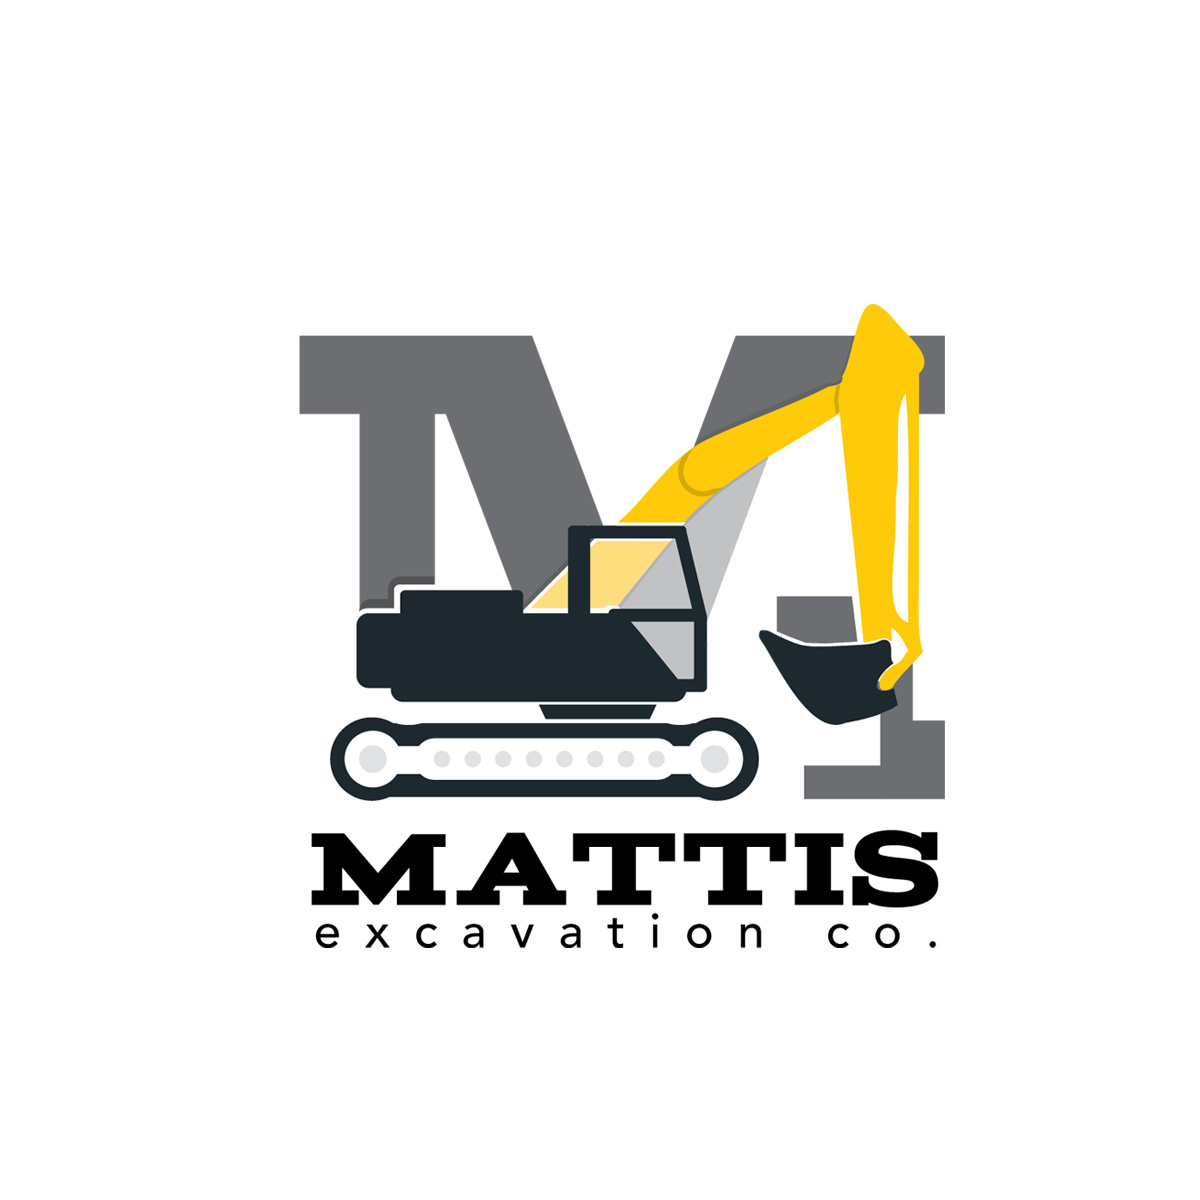 excavating company typographic logo